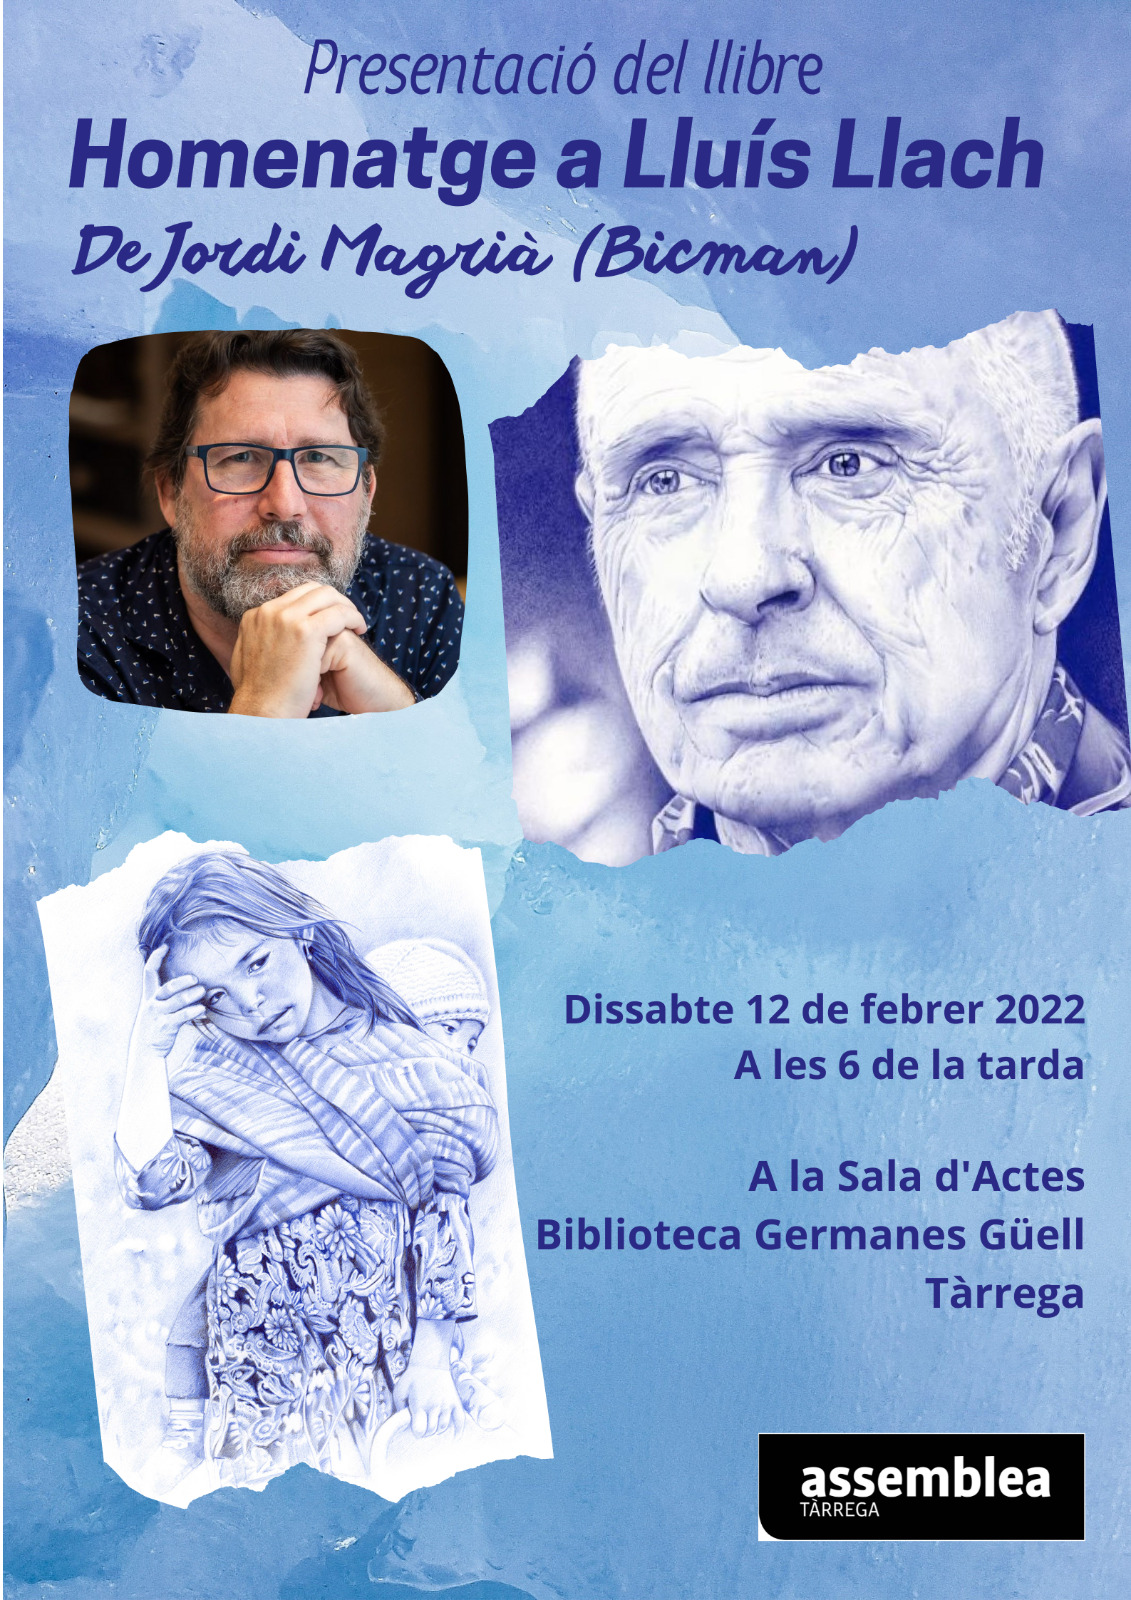 Presentació delllibre "Homenatge a Lluís Llach" de Jordi Magrià